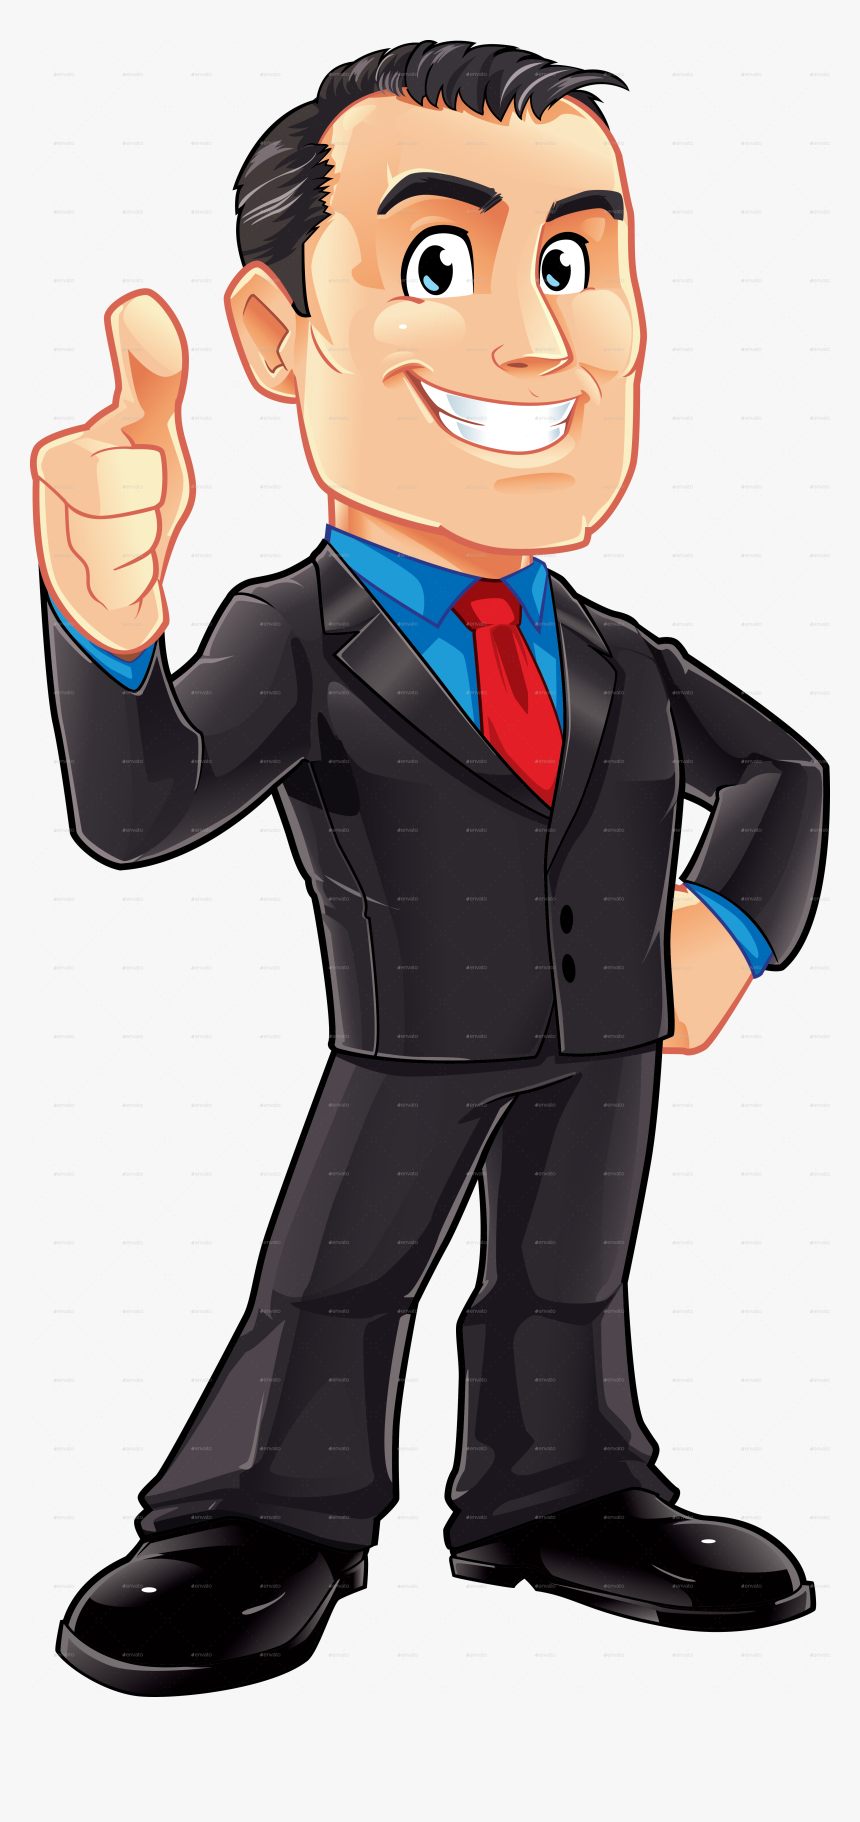 Businessman Clipart Fancy Man - Transparent Background Businessman ...